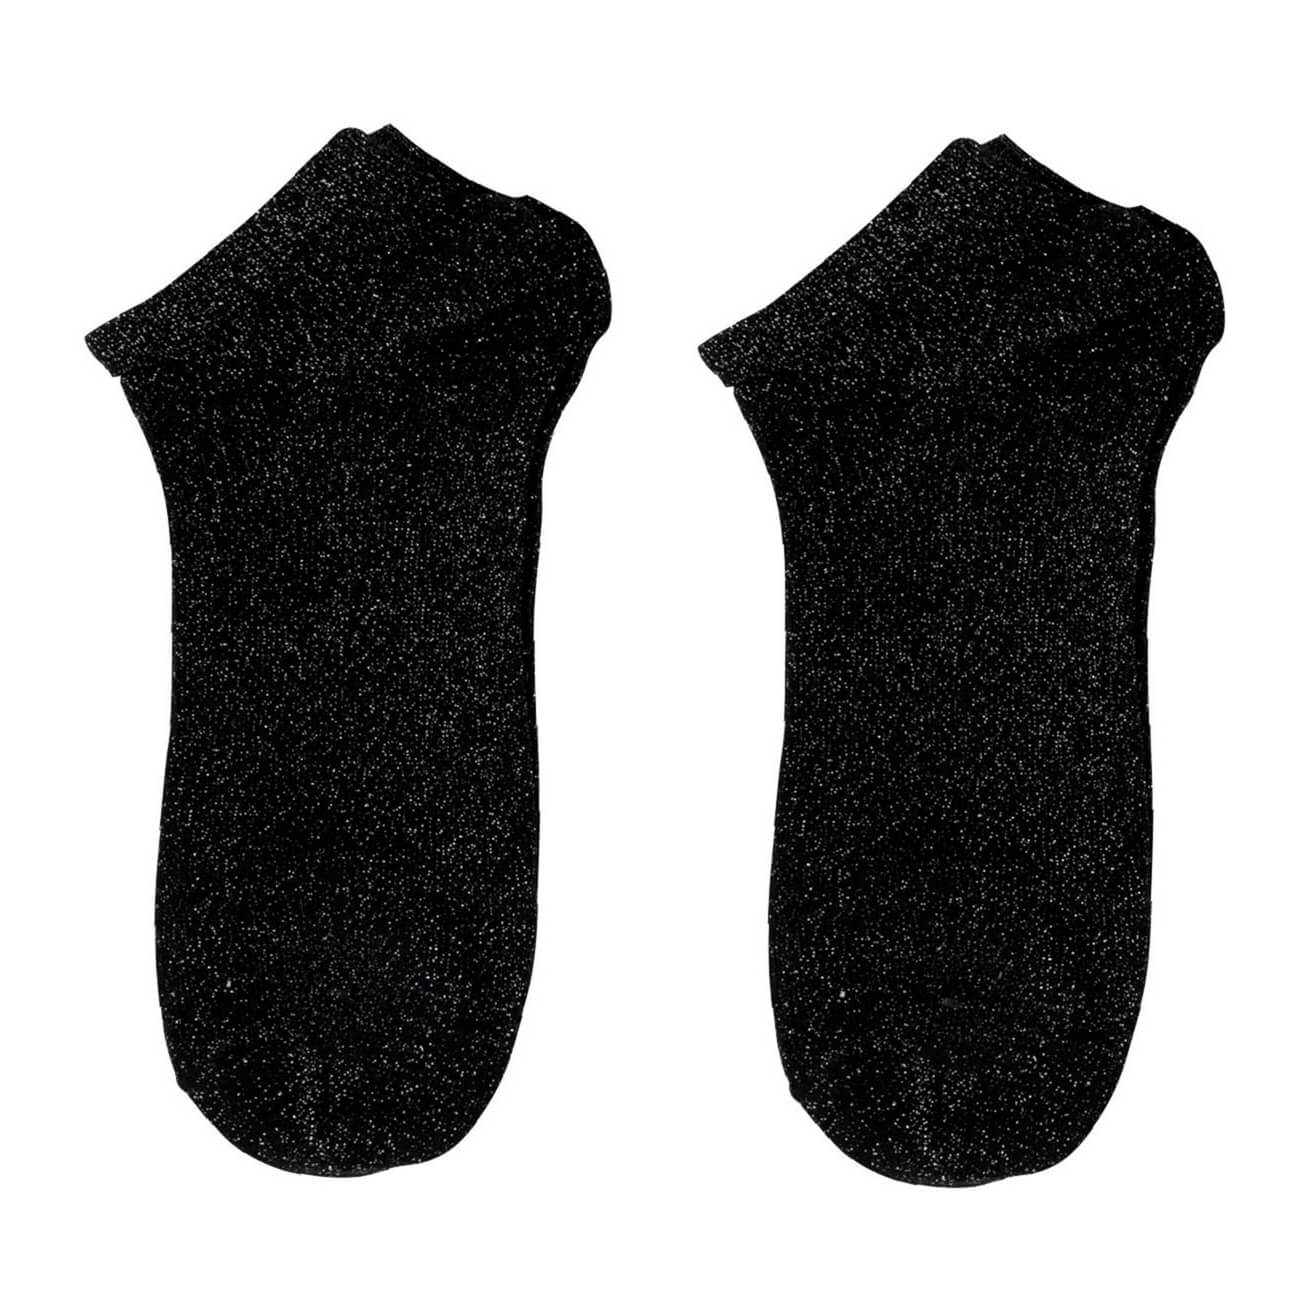 Носки женские, р. 36-38, хлопок/полиэстер, черные, Glint носки женские р 36 38 хлопок полиэстер черные basic